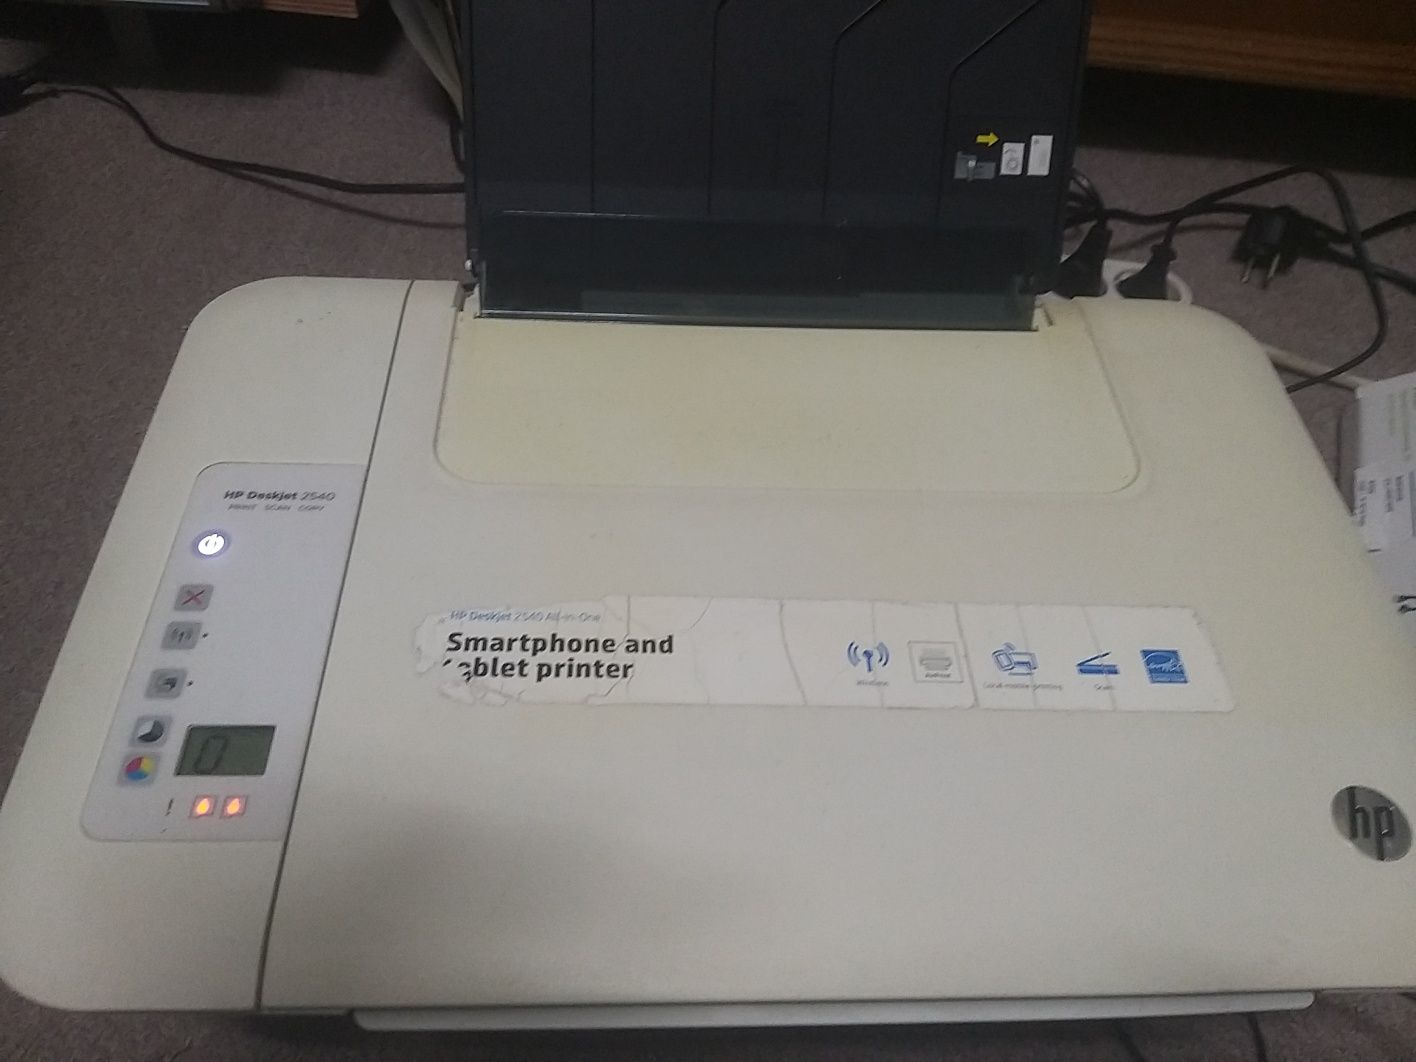 Impressora HP 2540